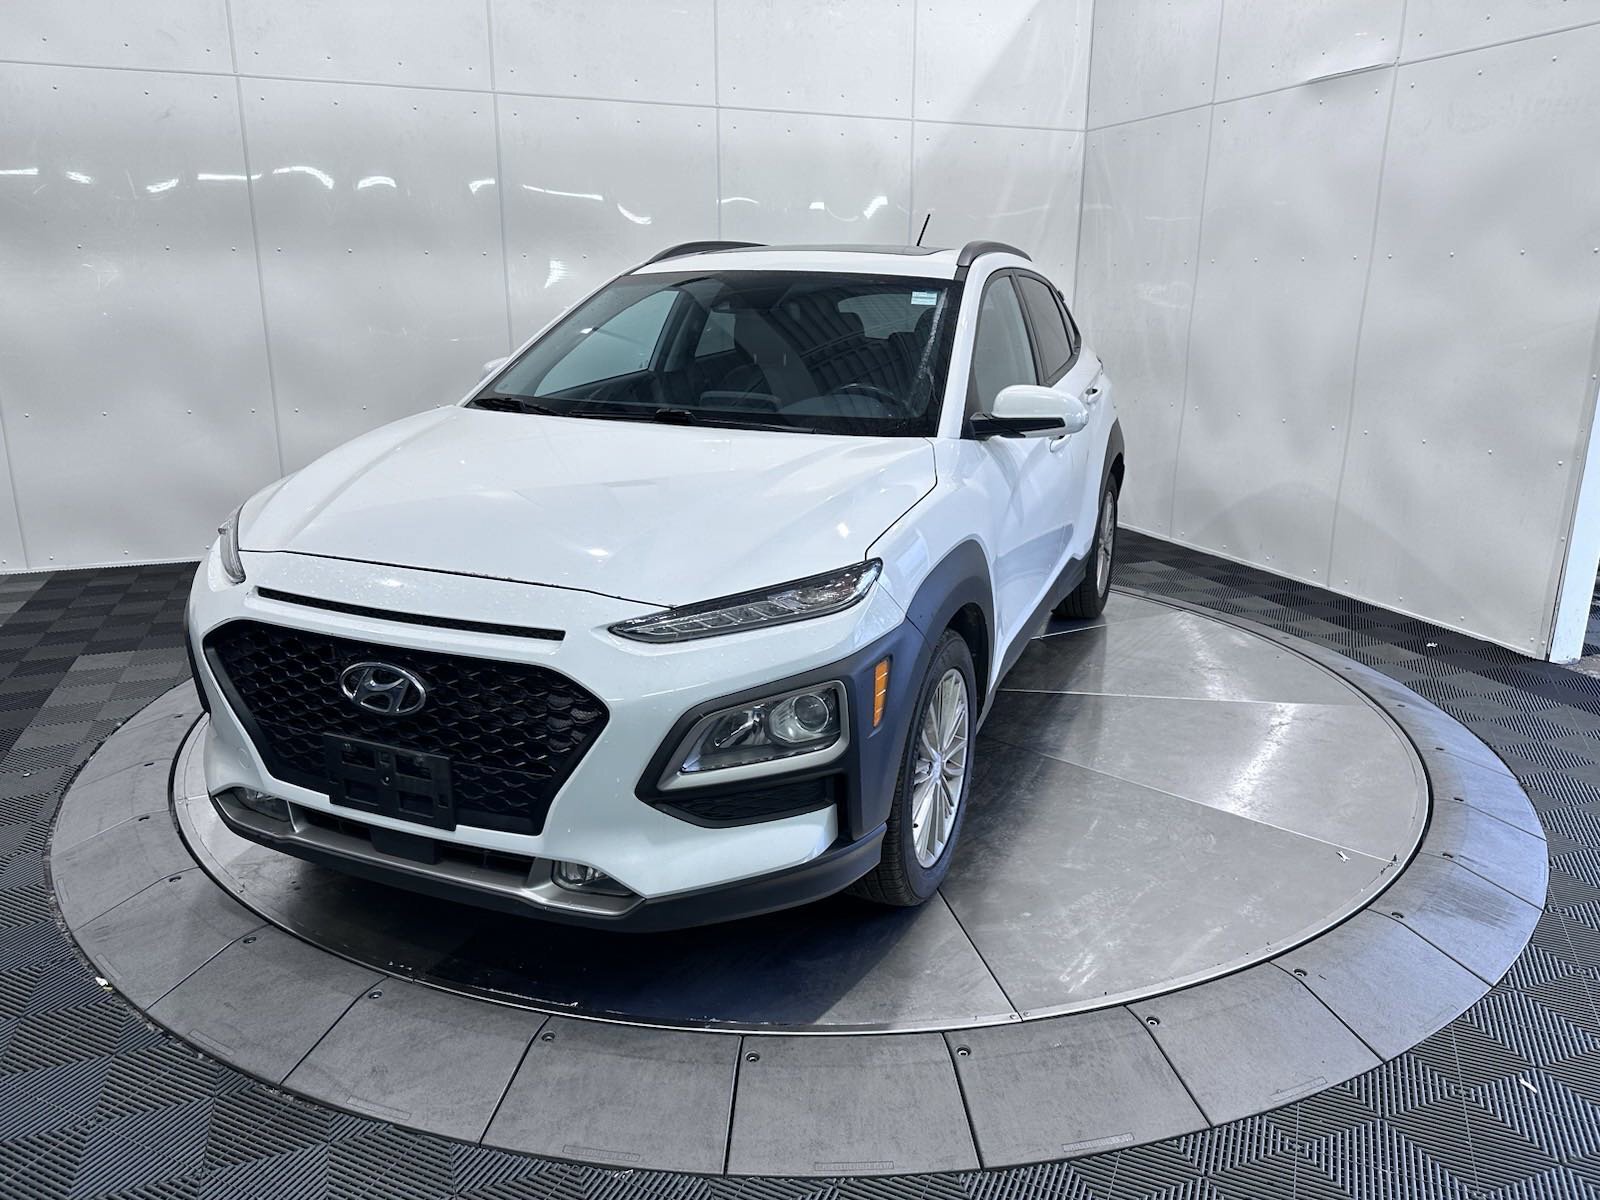 2018 Hyundai Kona Luxury